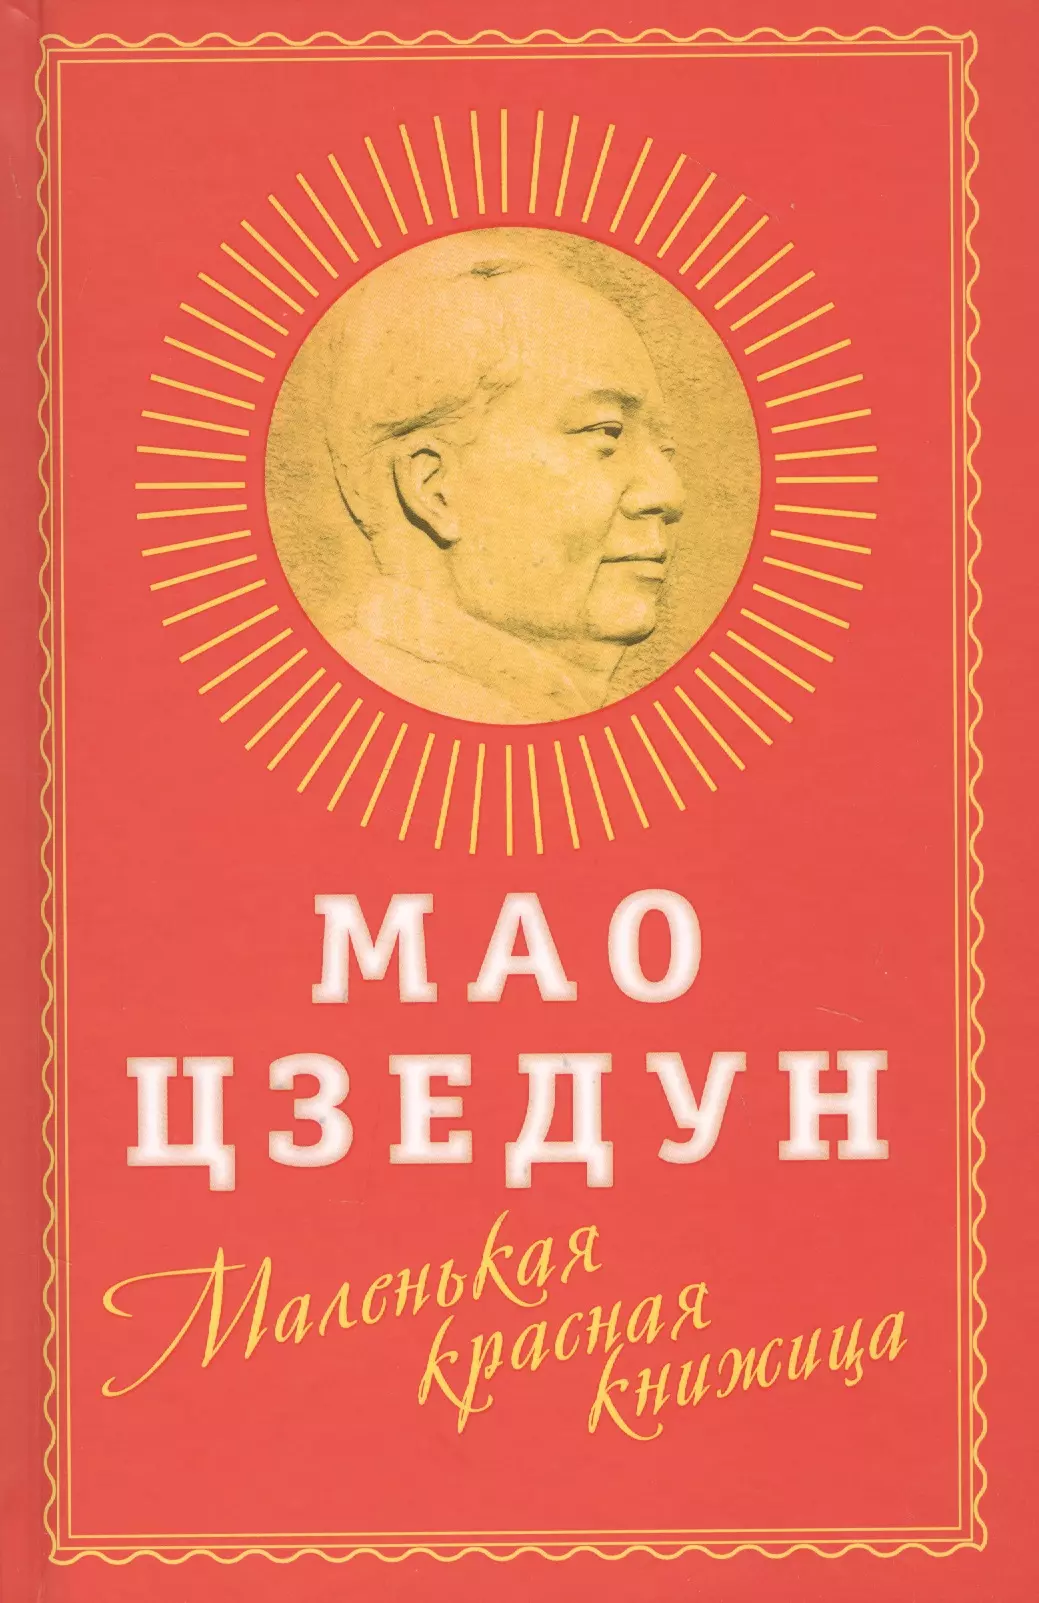 цена Мао Цзэдун Маленькая красная книжица